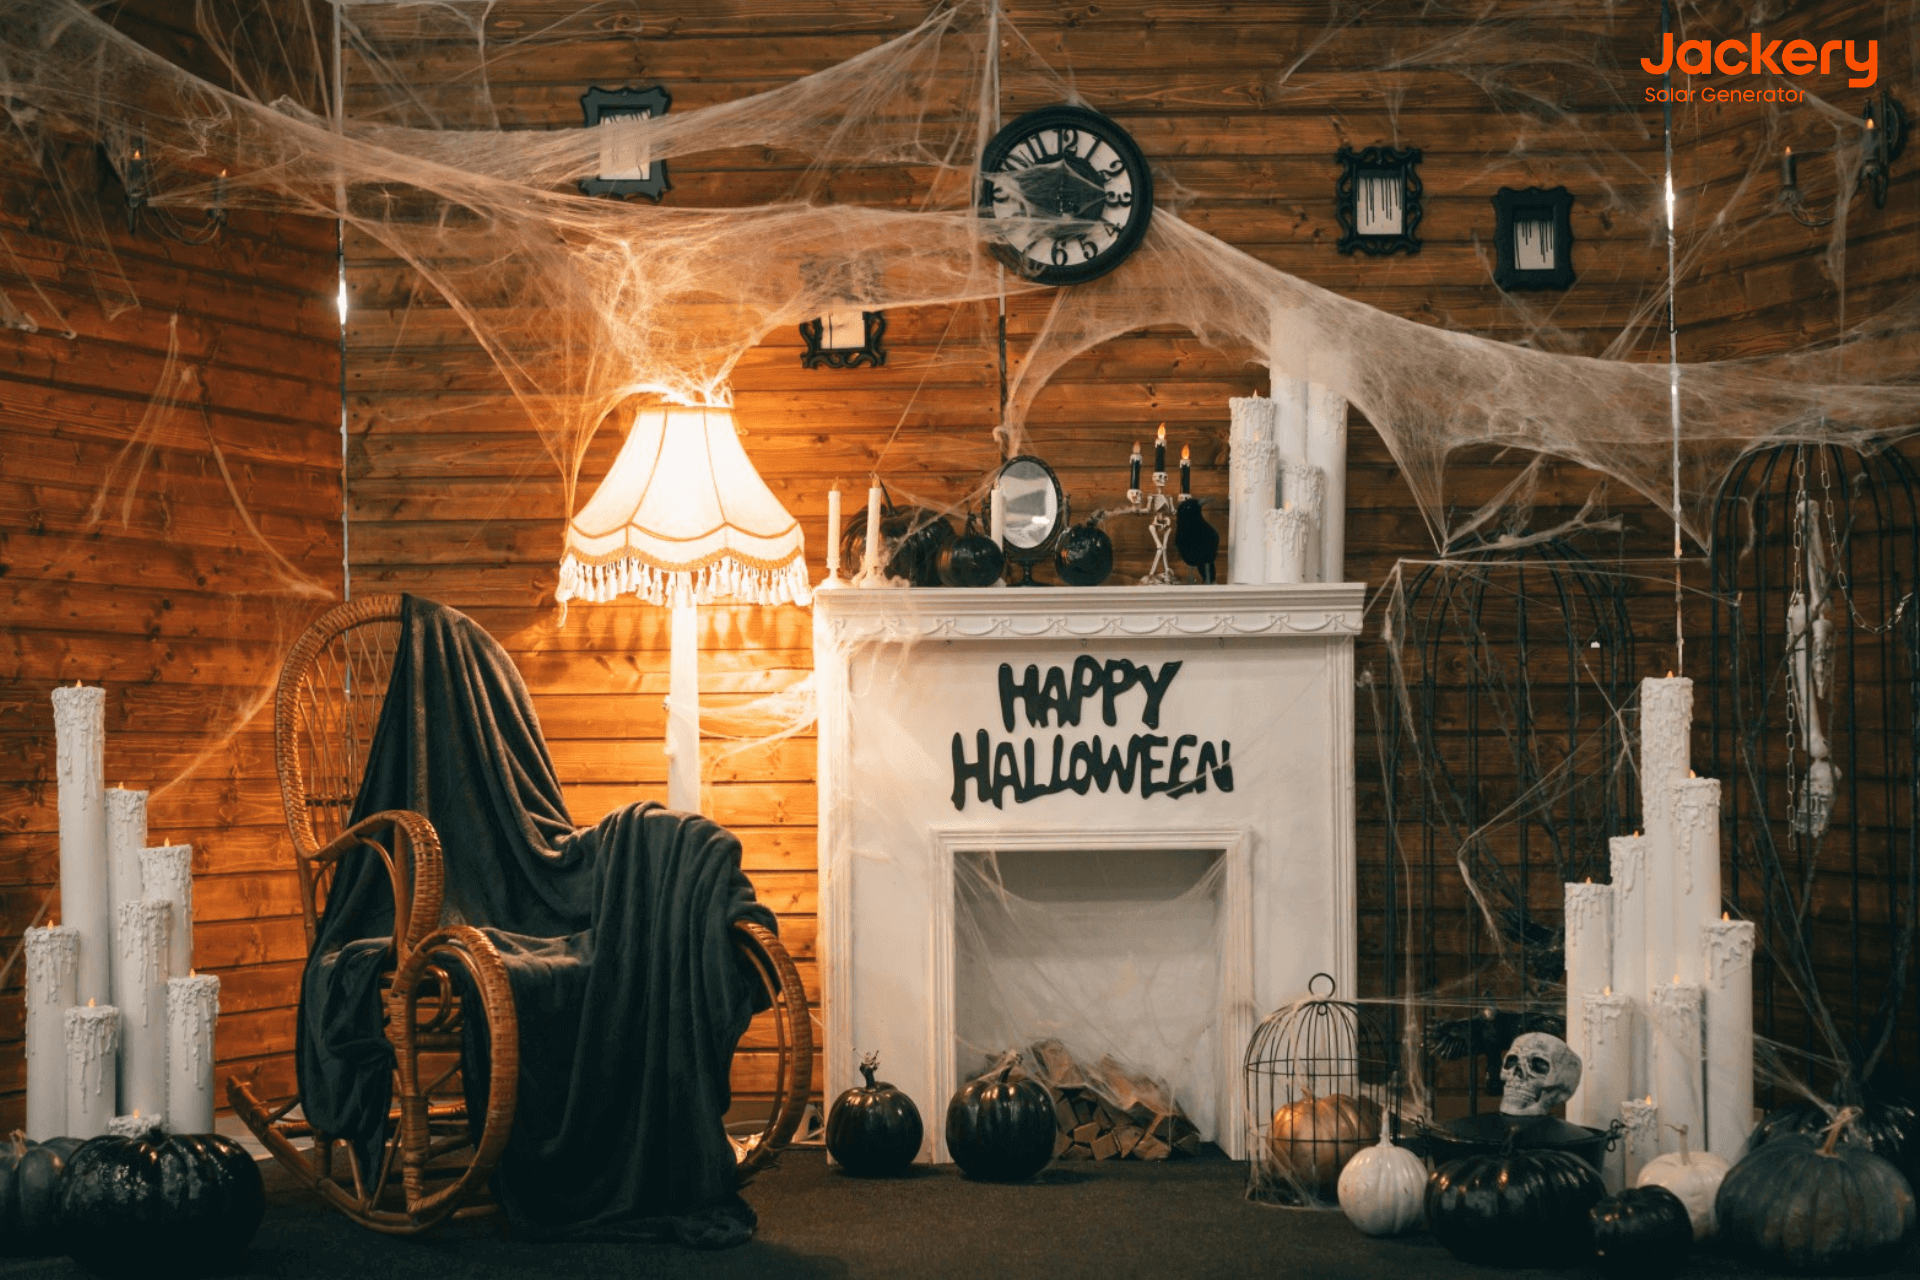 intdoor Halloween decorations